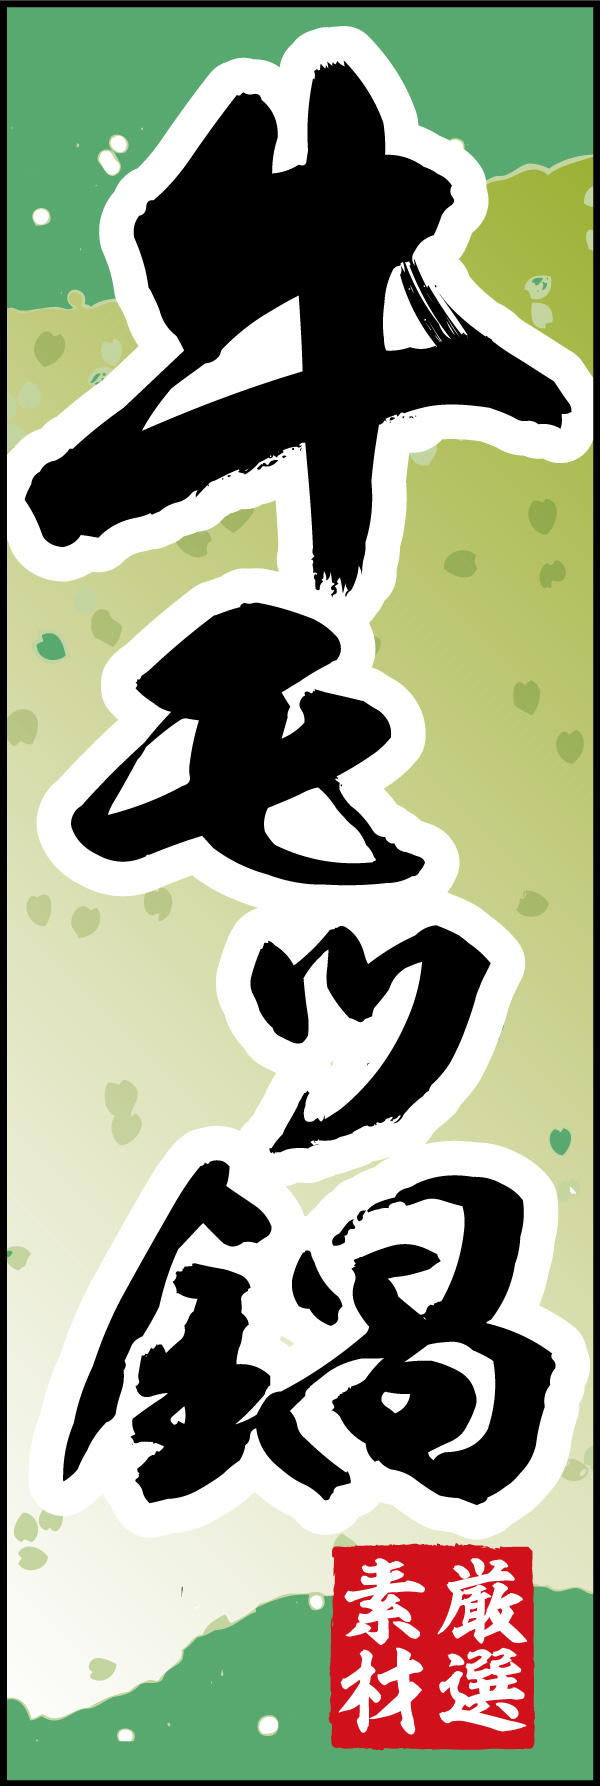 牛モツ鍋 06「牛モツ鍋」ののぼりです。和柄をベースに筆文字で「和」のイメージを強調してみました。(Y.M) 